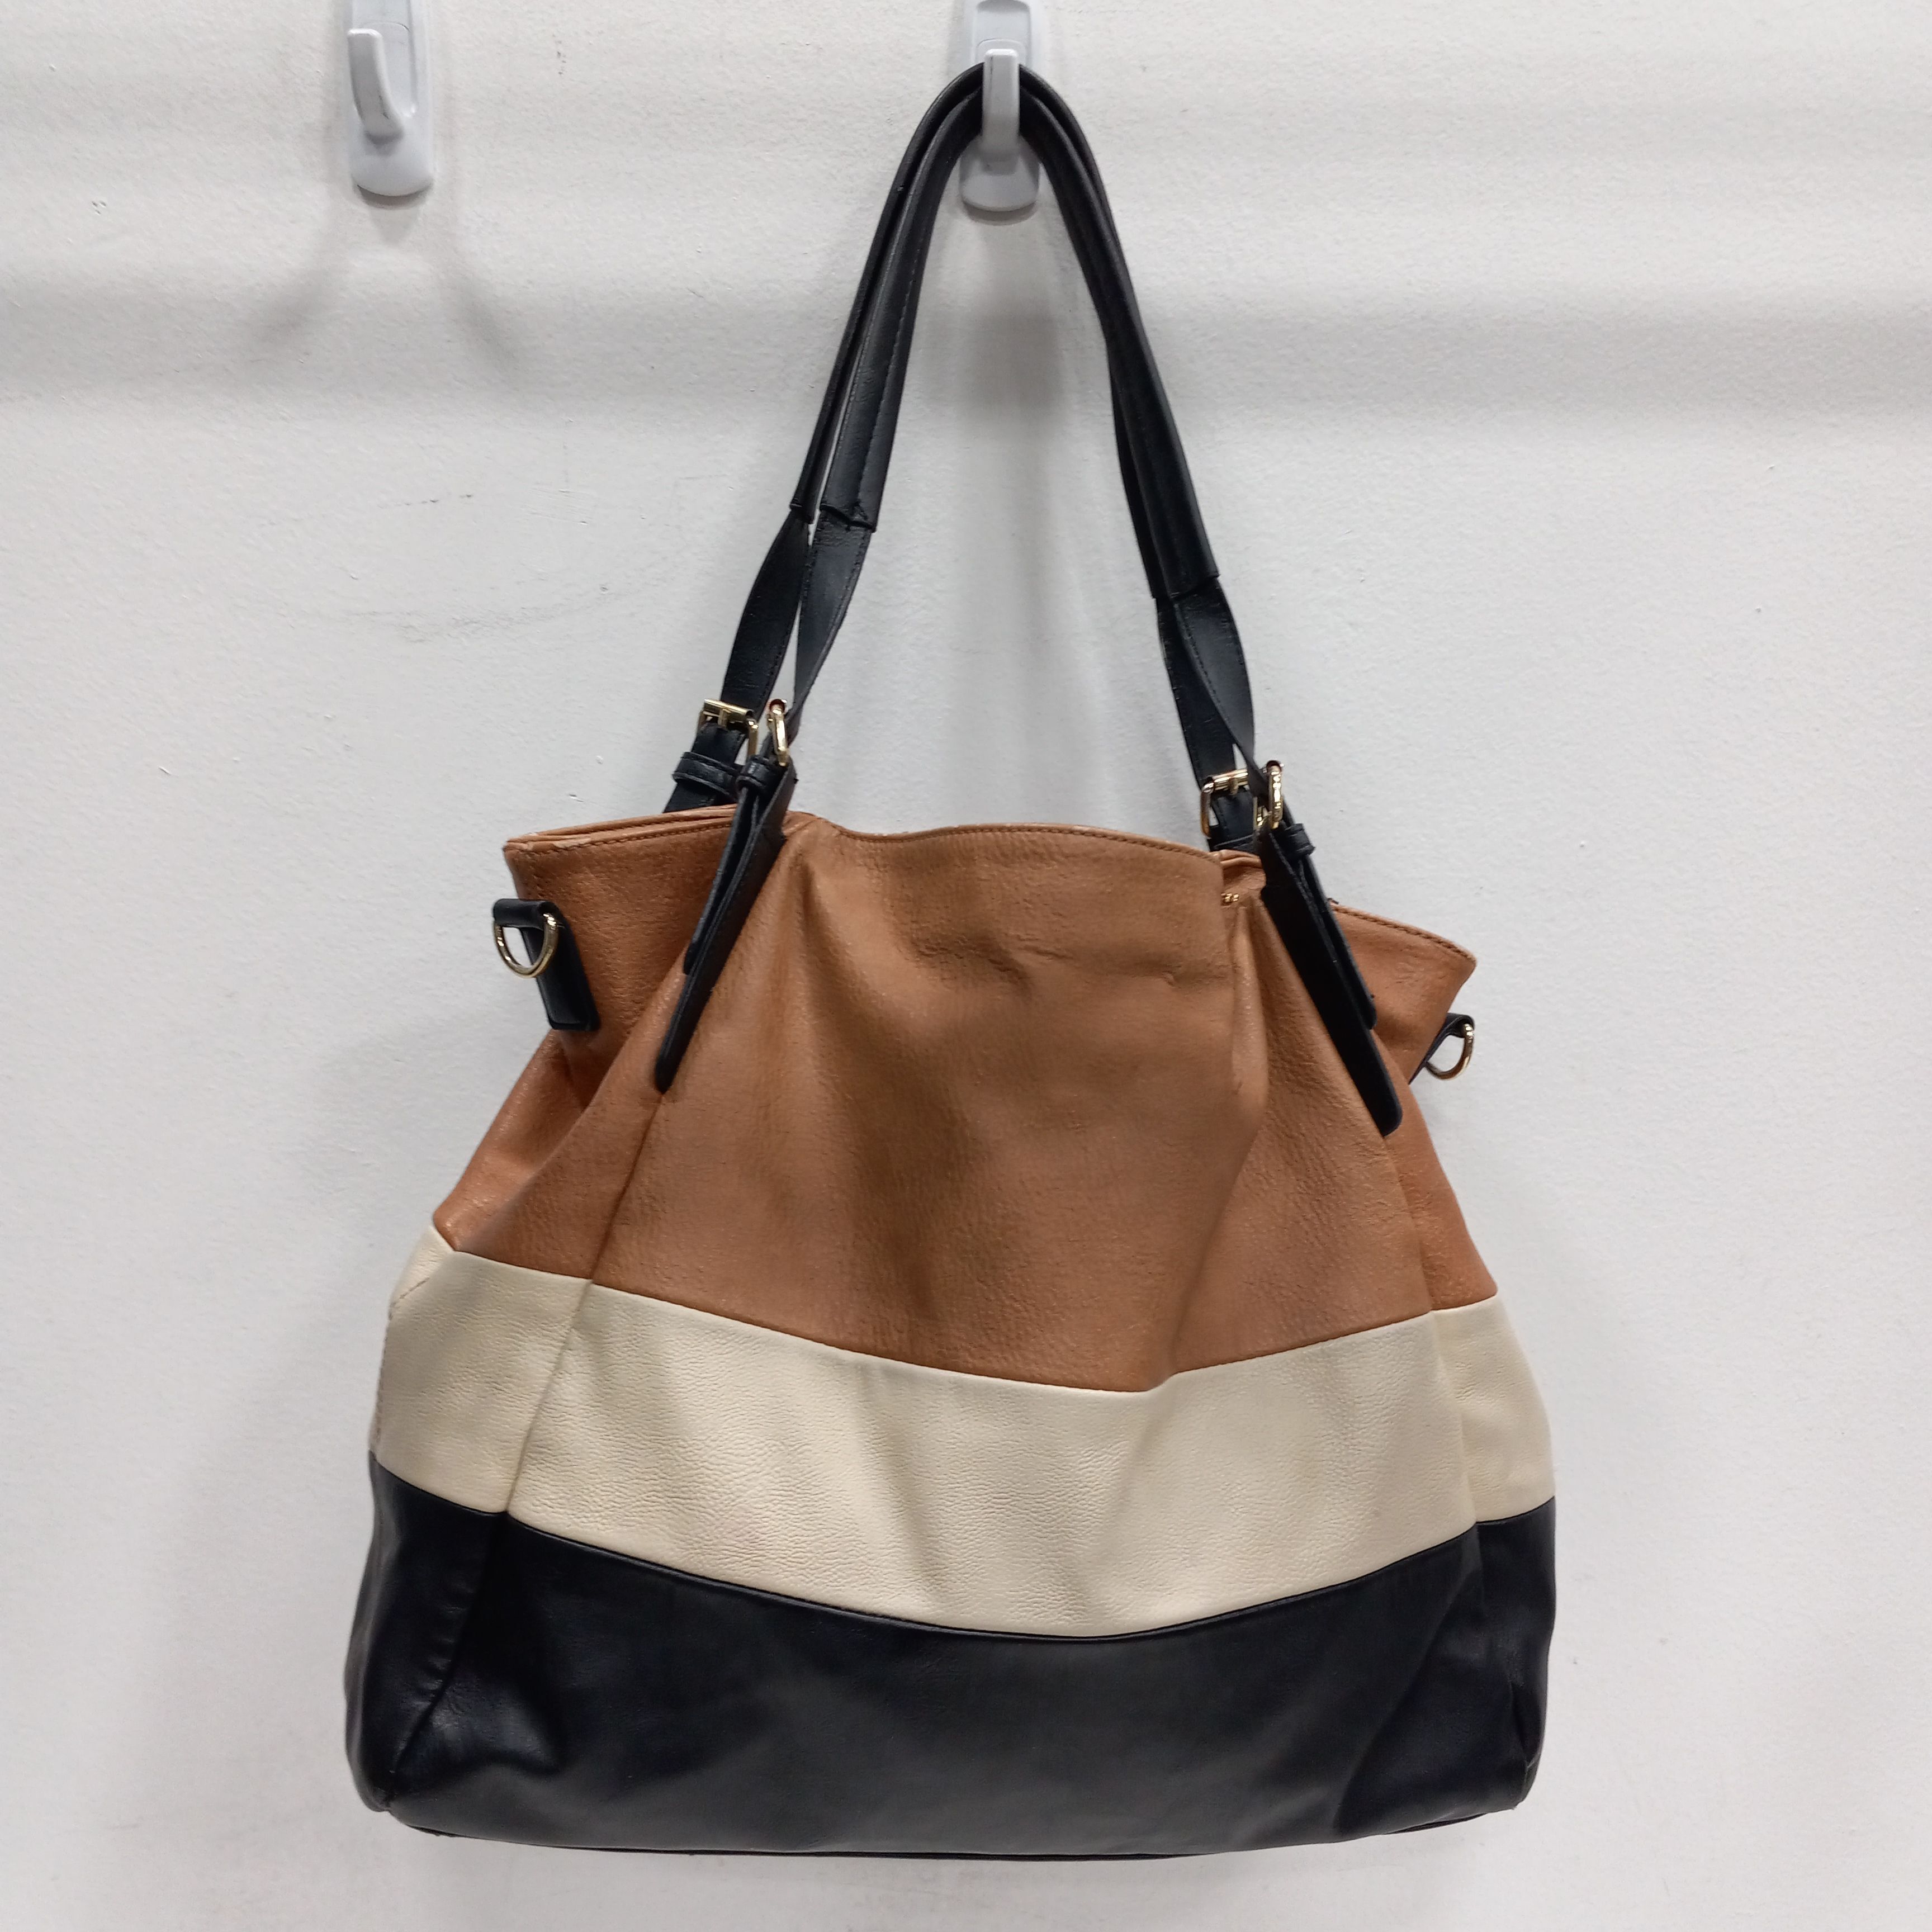 Fossil Multicolor Leather Purse Handbag Boho Striped Shoulder Bag | eBay